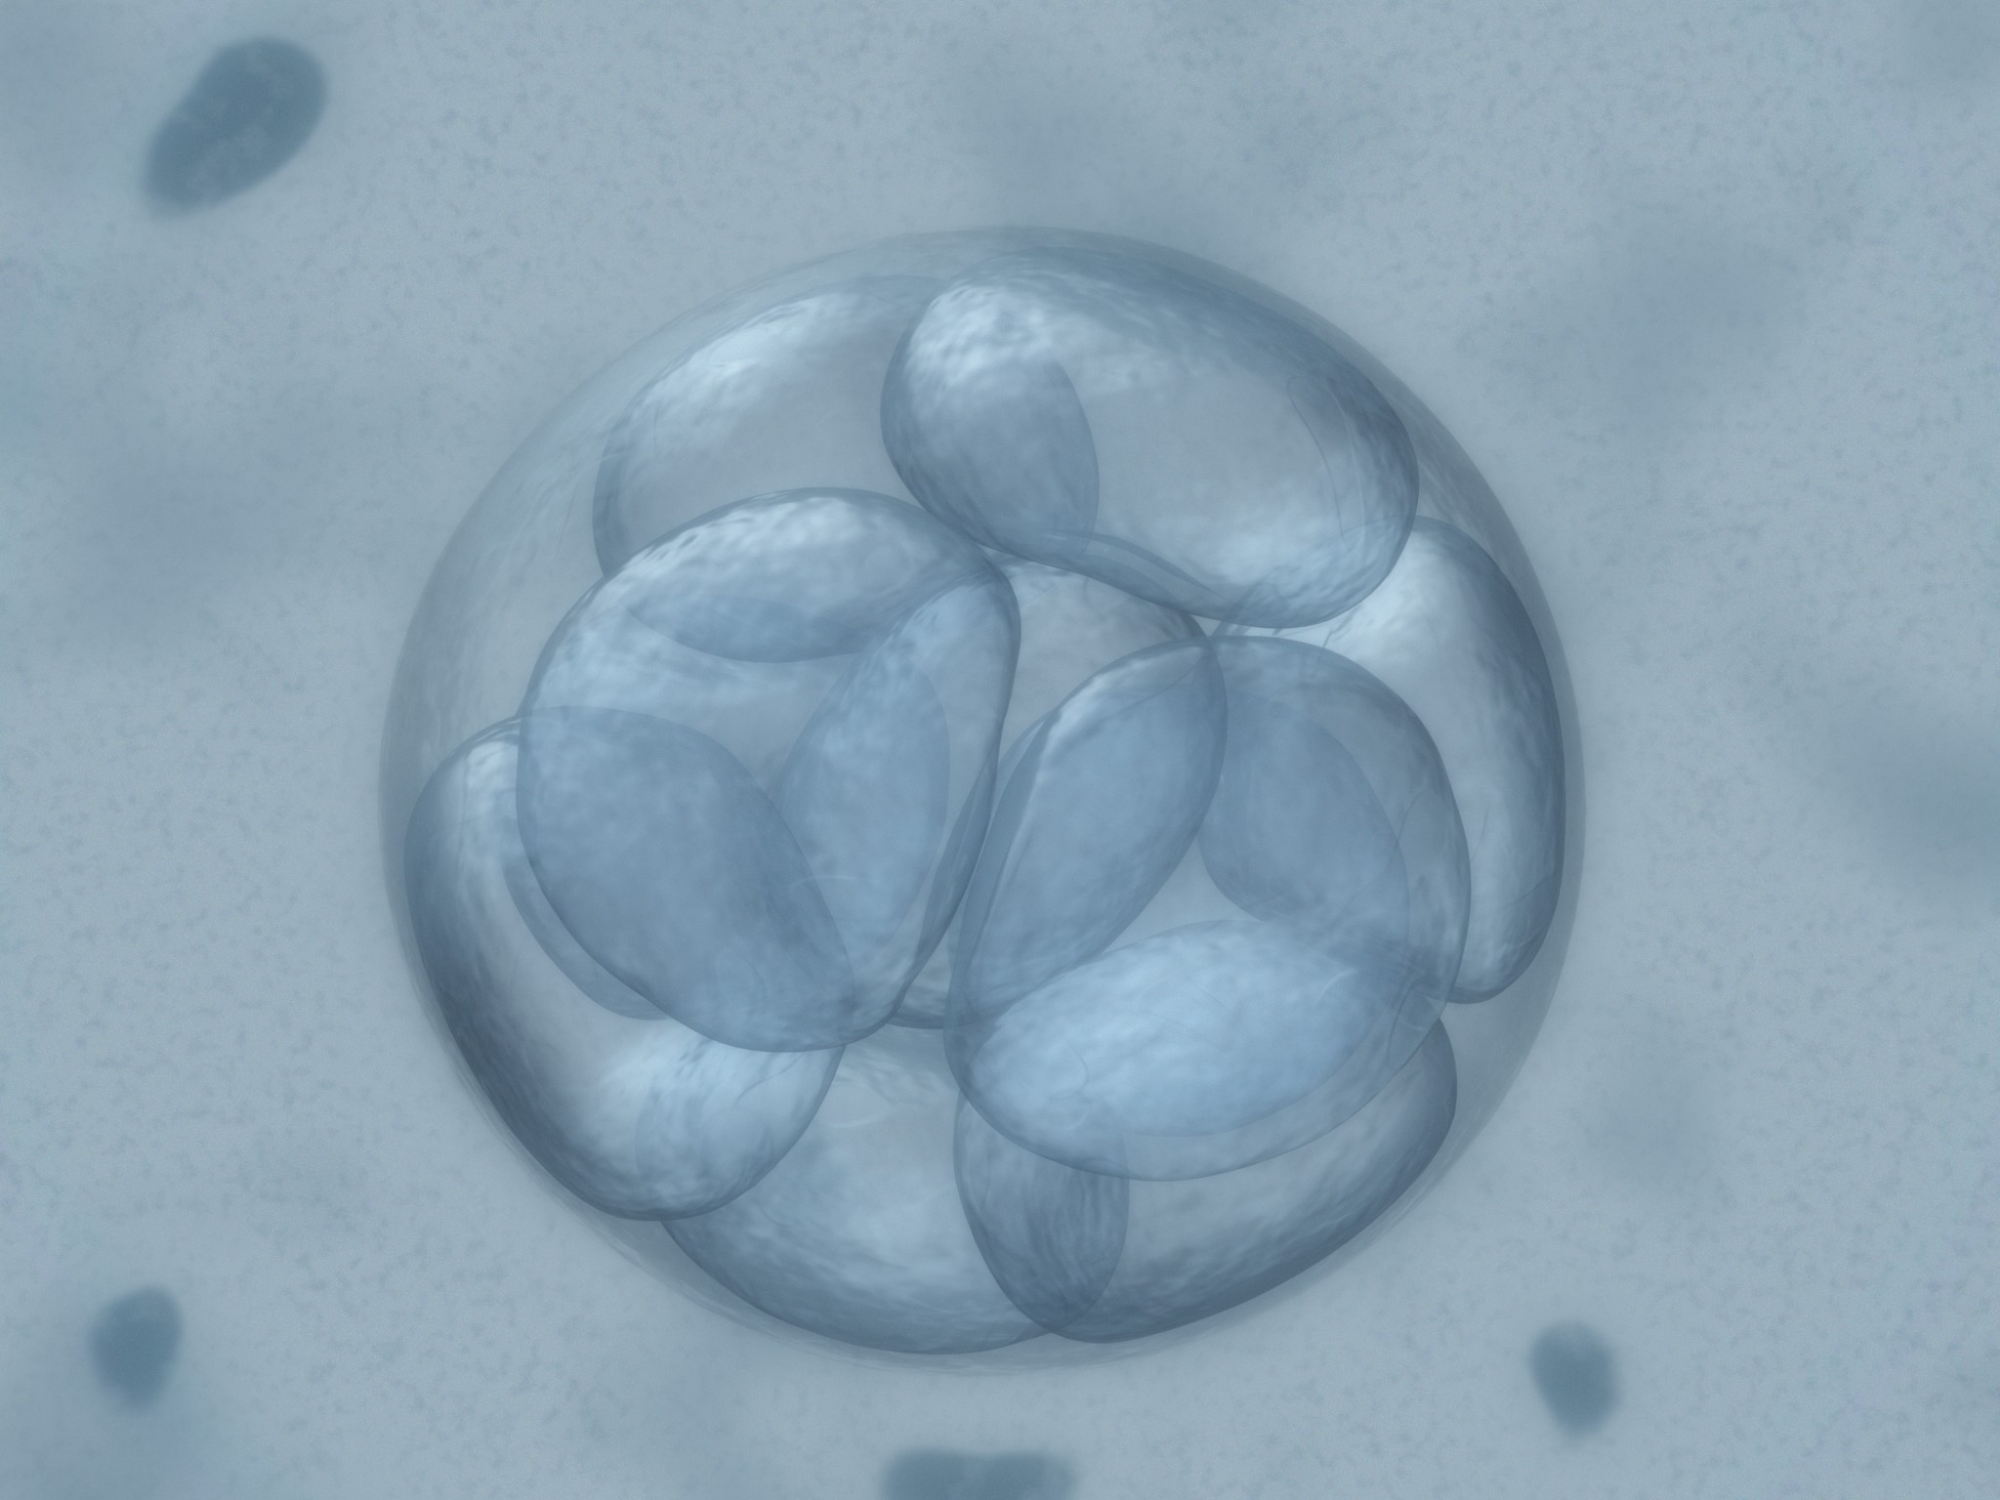 embrião a fresco ou congelado